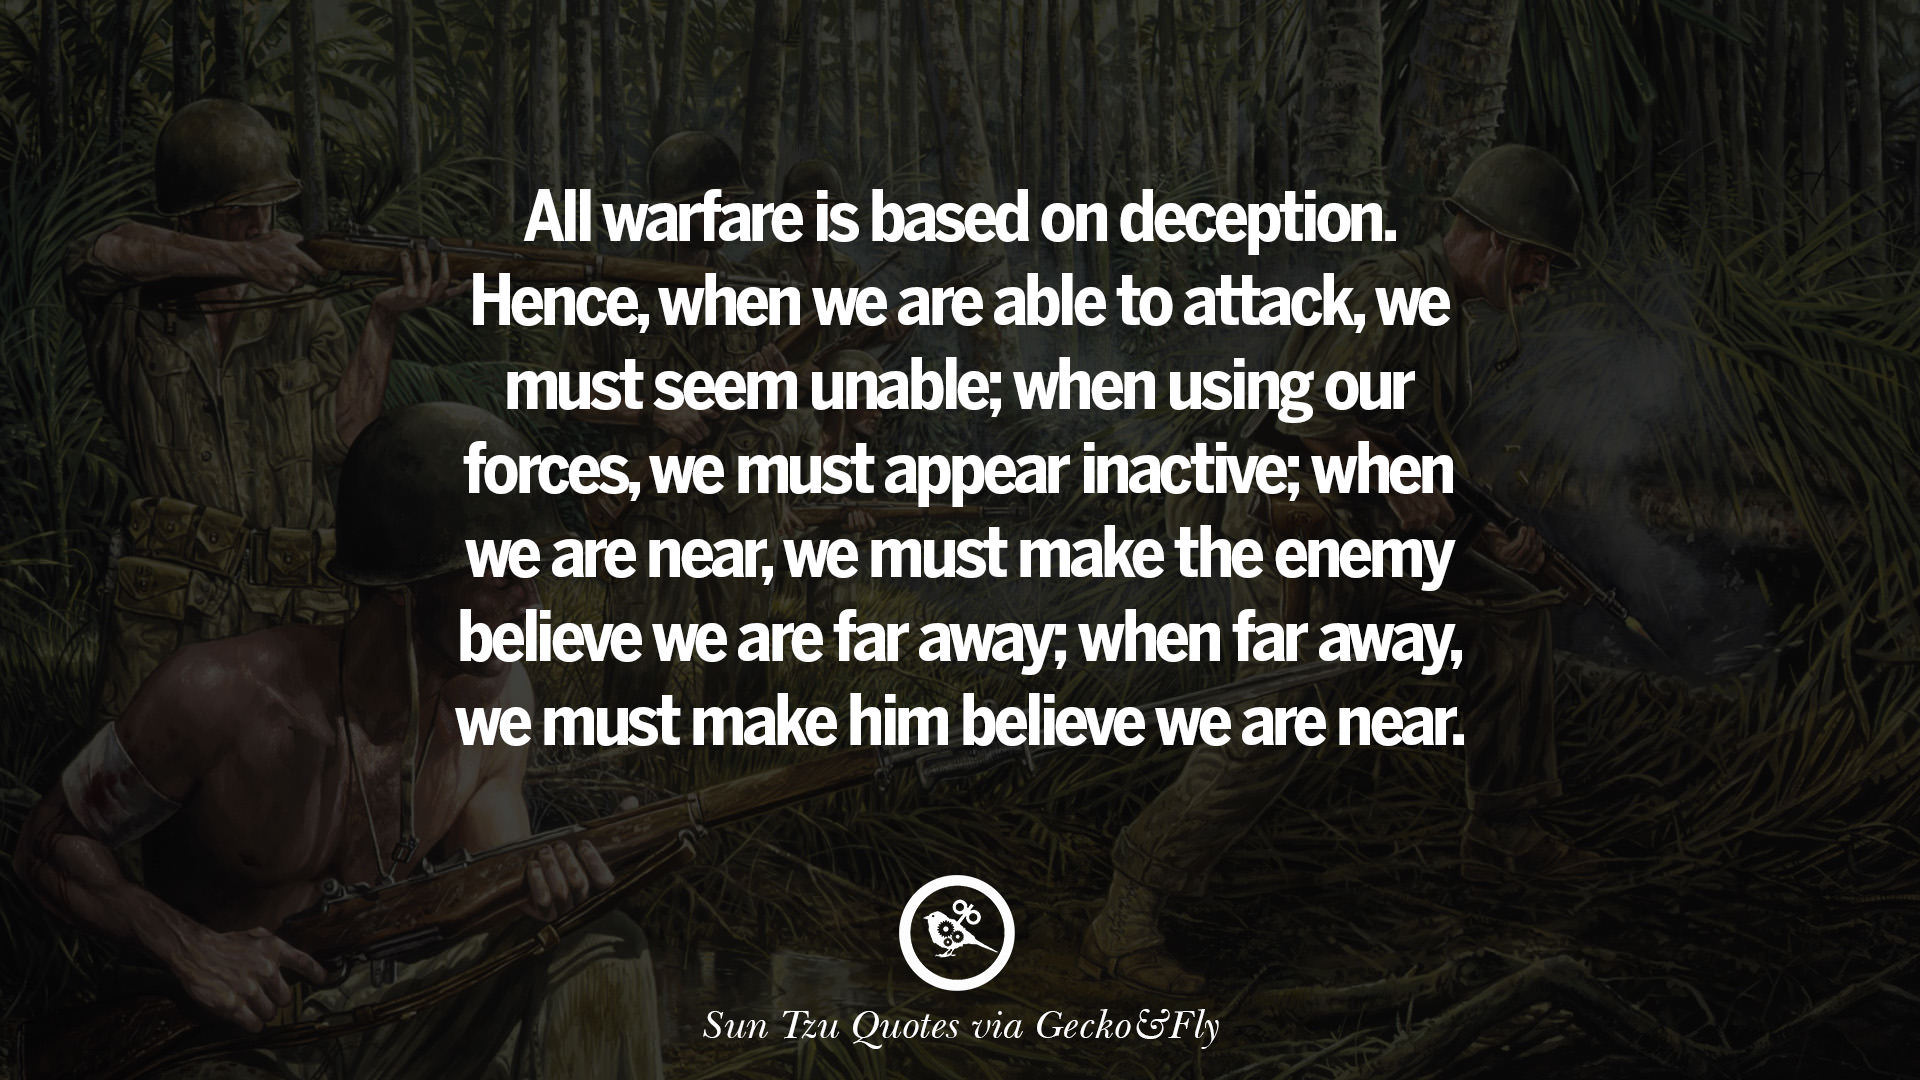 Sun Tzu Quotes, The Art of War Quotes